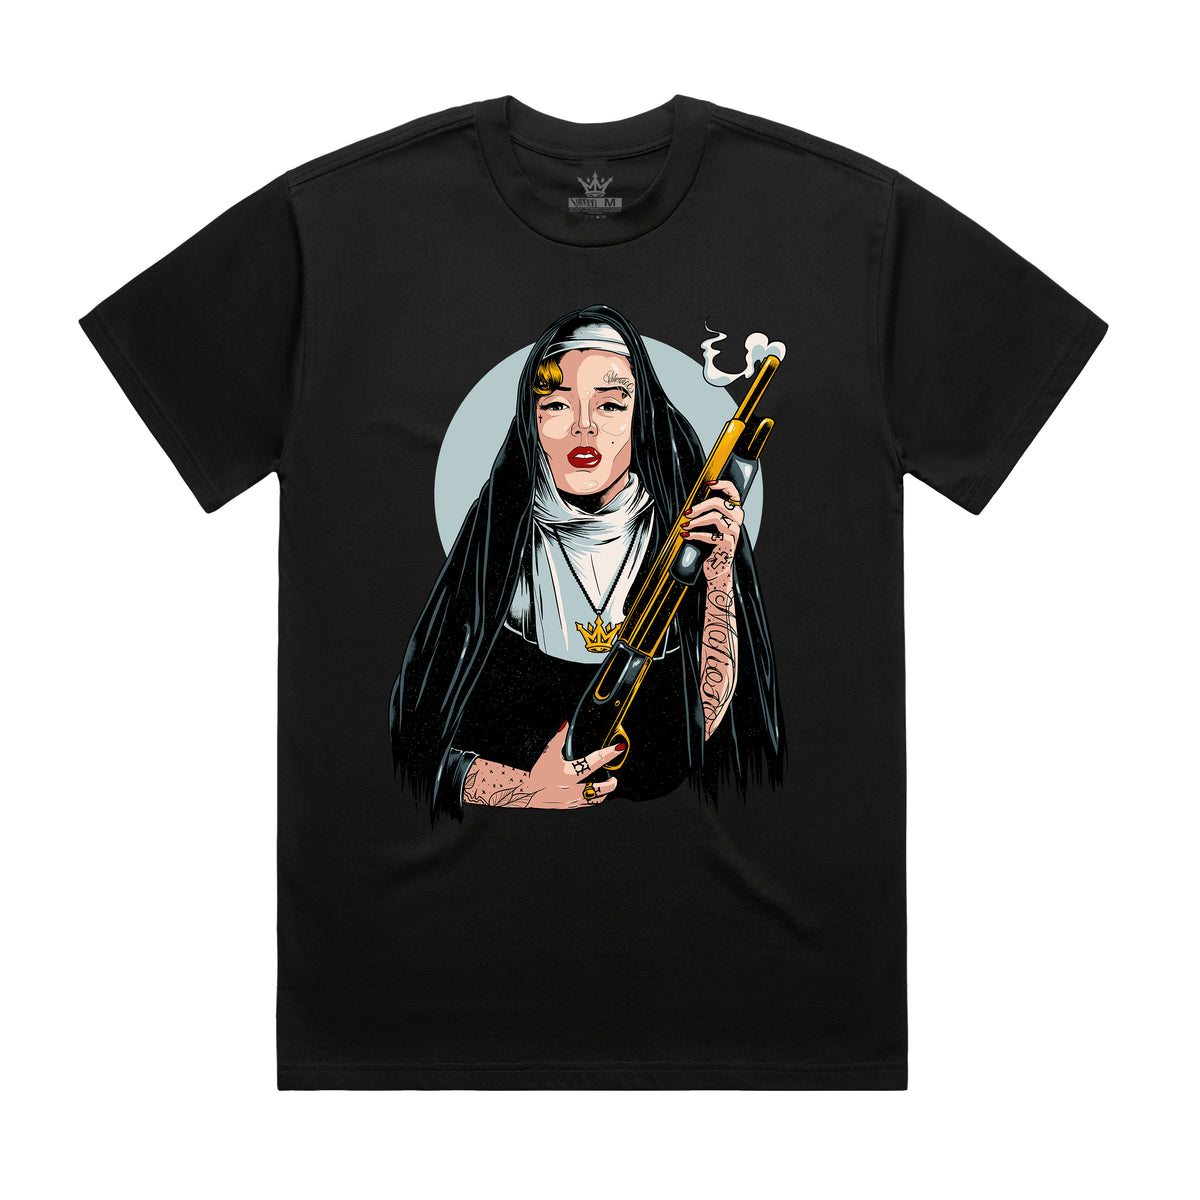 Sister Monroe 2.0